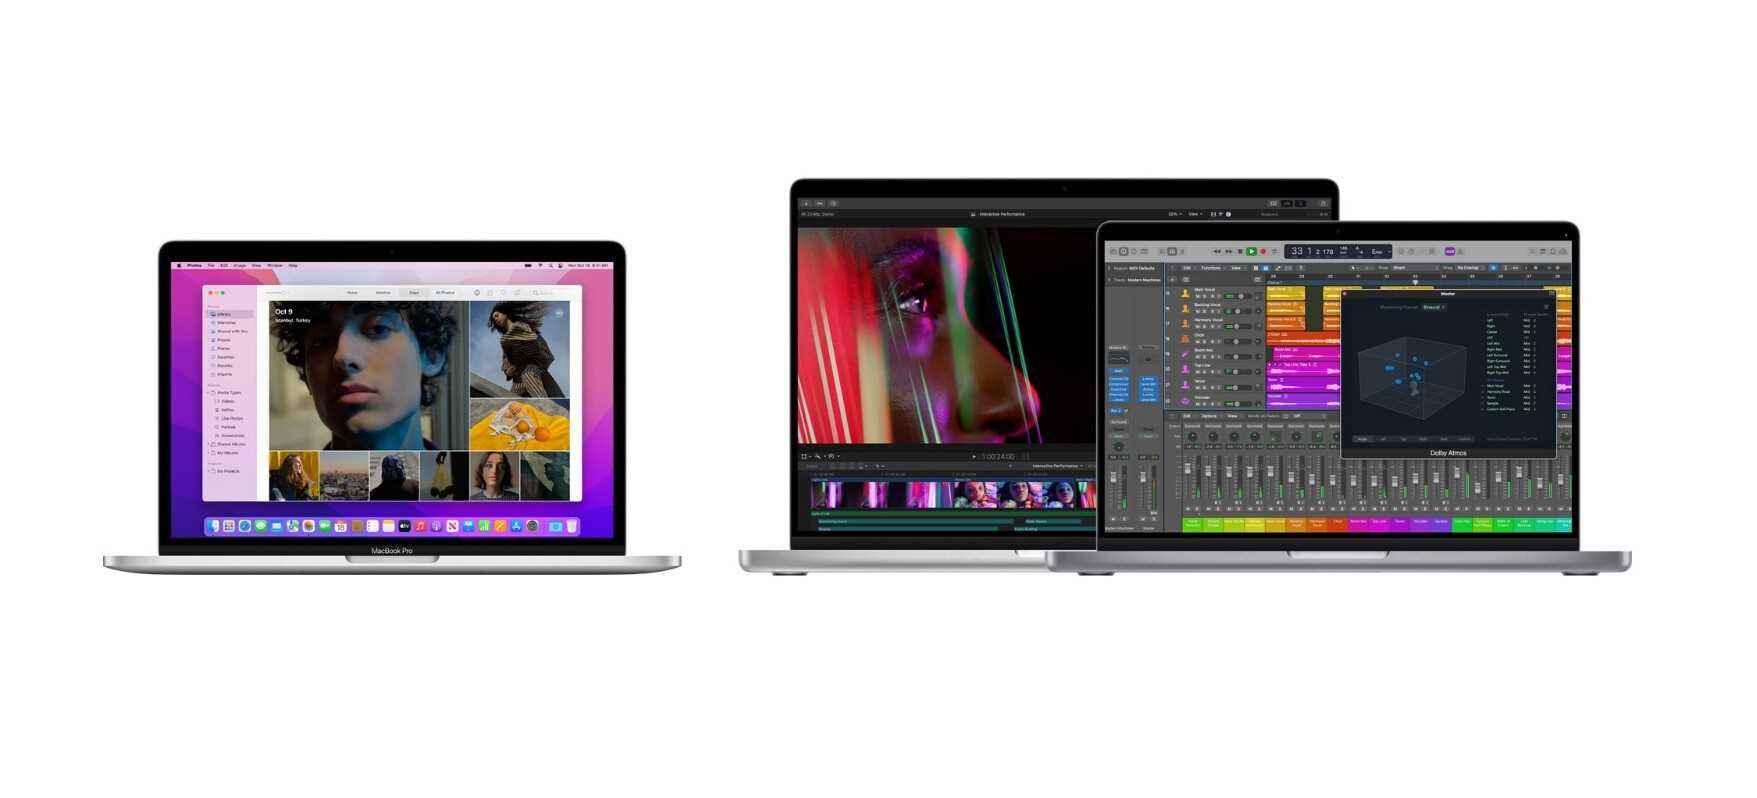 Altes vs. neues MacBook Pro-Design (rechts);  Der Chonk-Faktor ist gestiegen, und ehrlich gesagt zum Besseren - Apples kurze Geschichte des Eingeständnisses seiner Fehler: Wir haben etwas bewirkt?